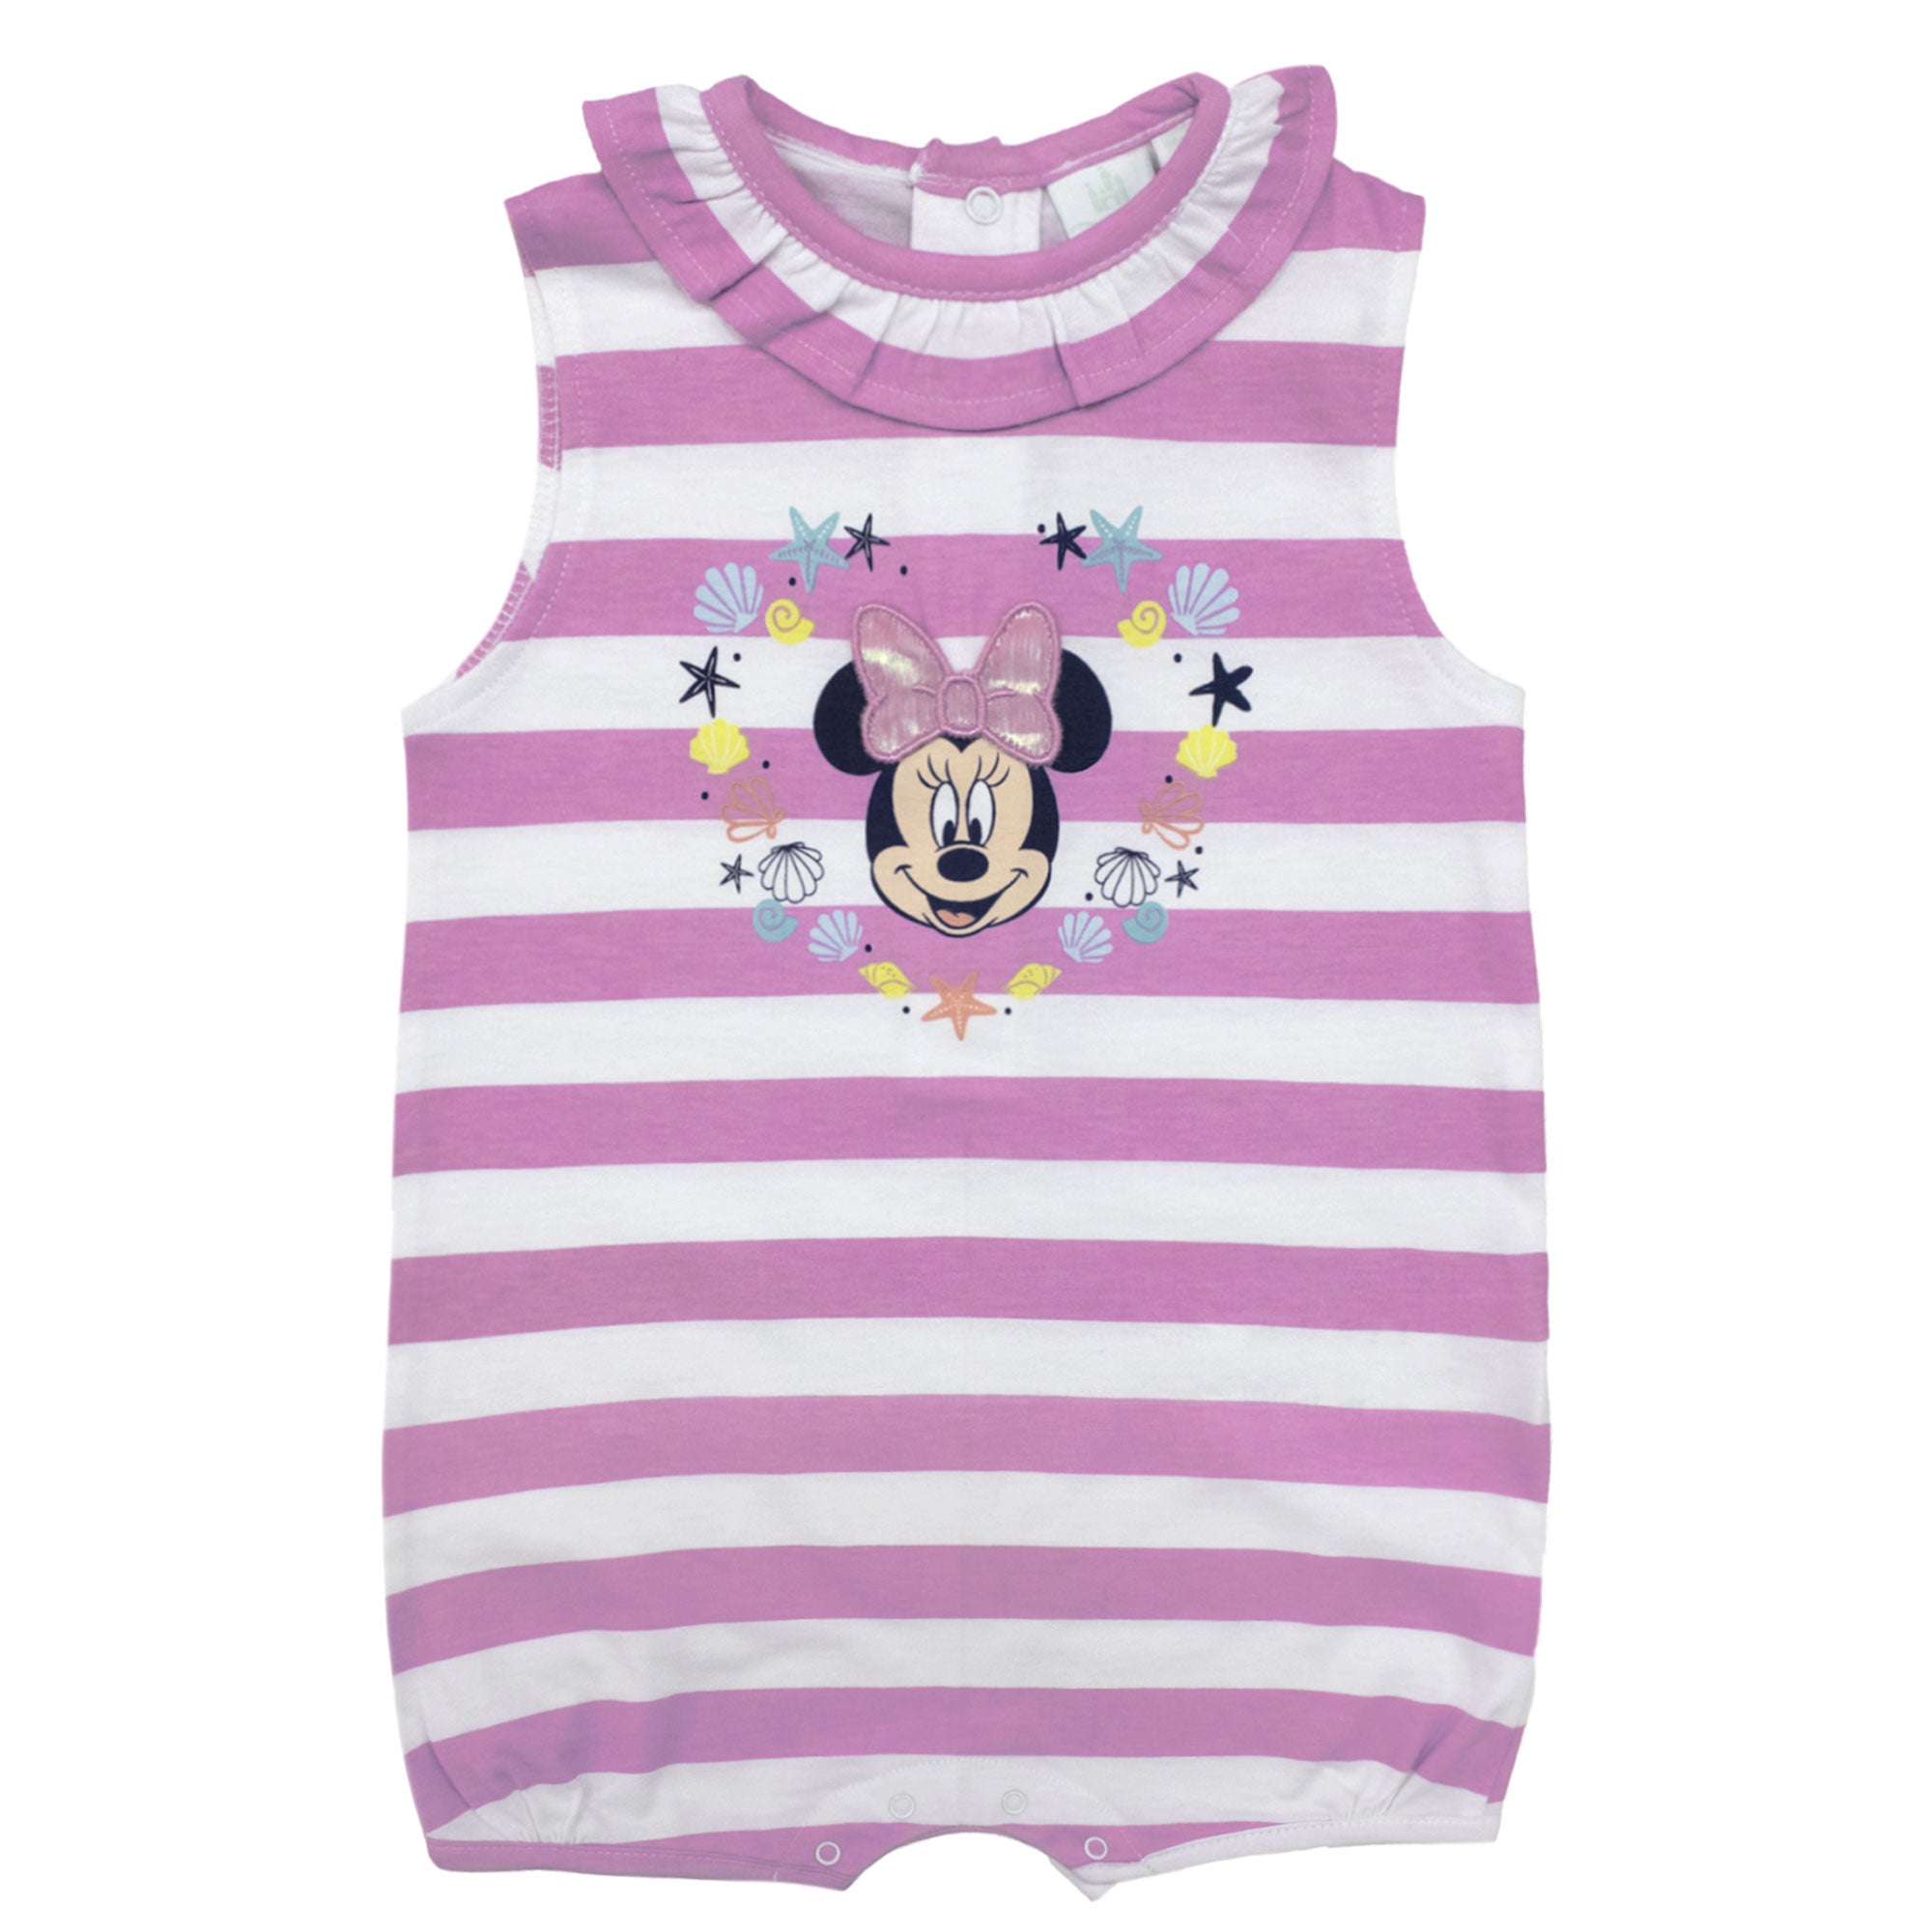 Pagliaccetto Disney neonato Minnie Mouse in cotone estivo per bimba 6796